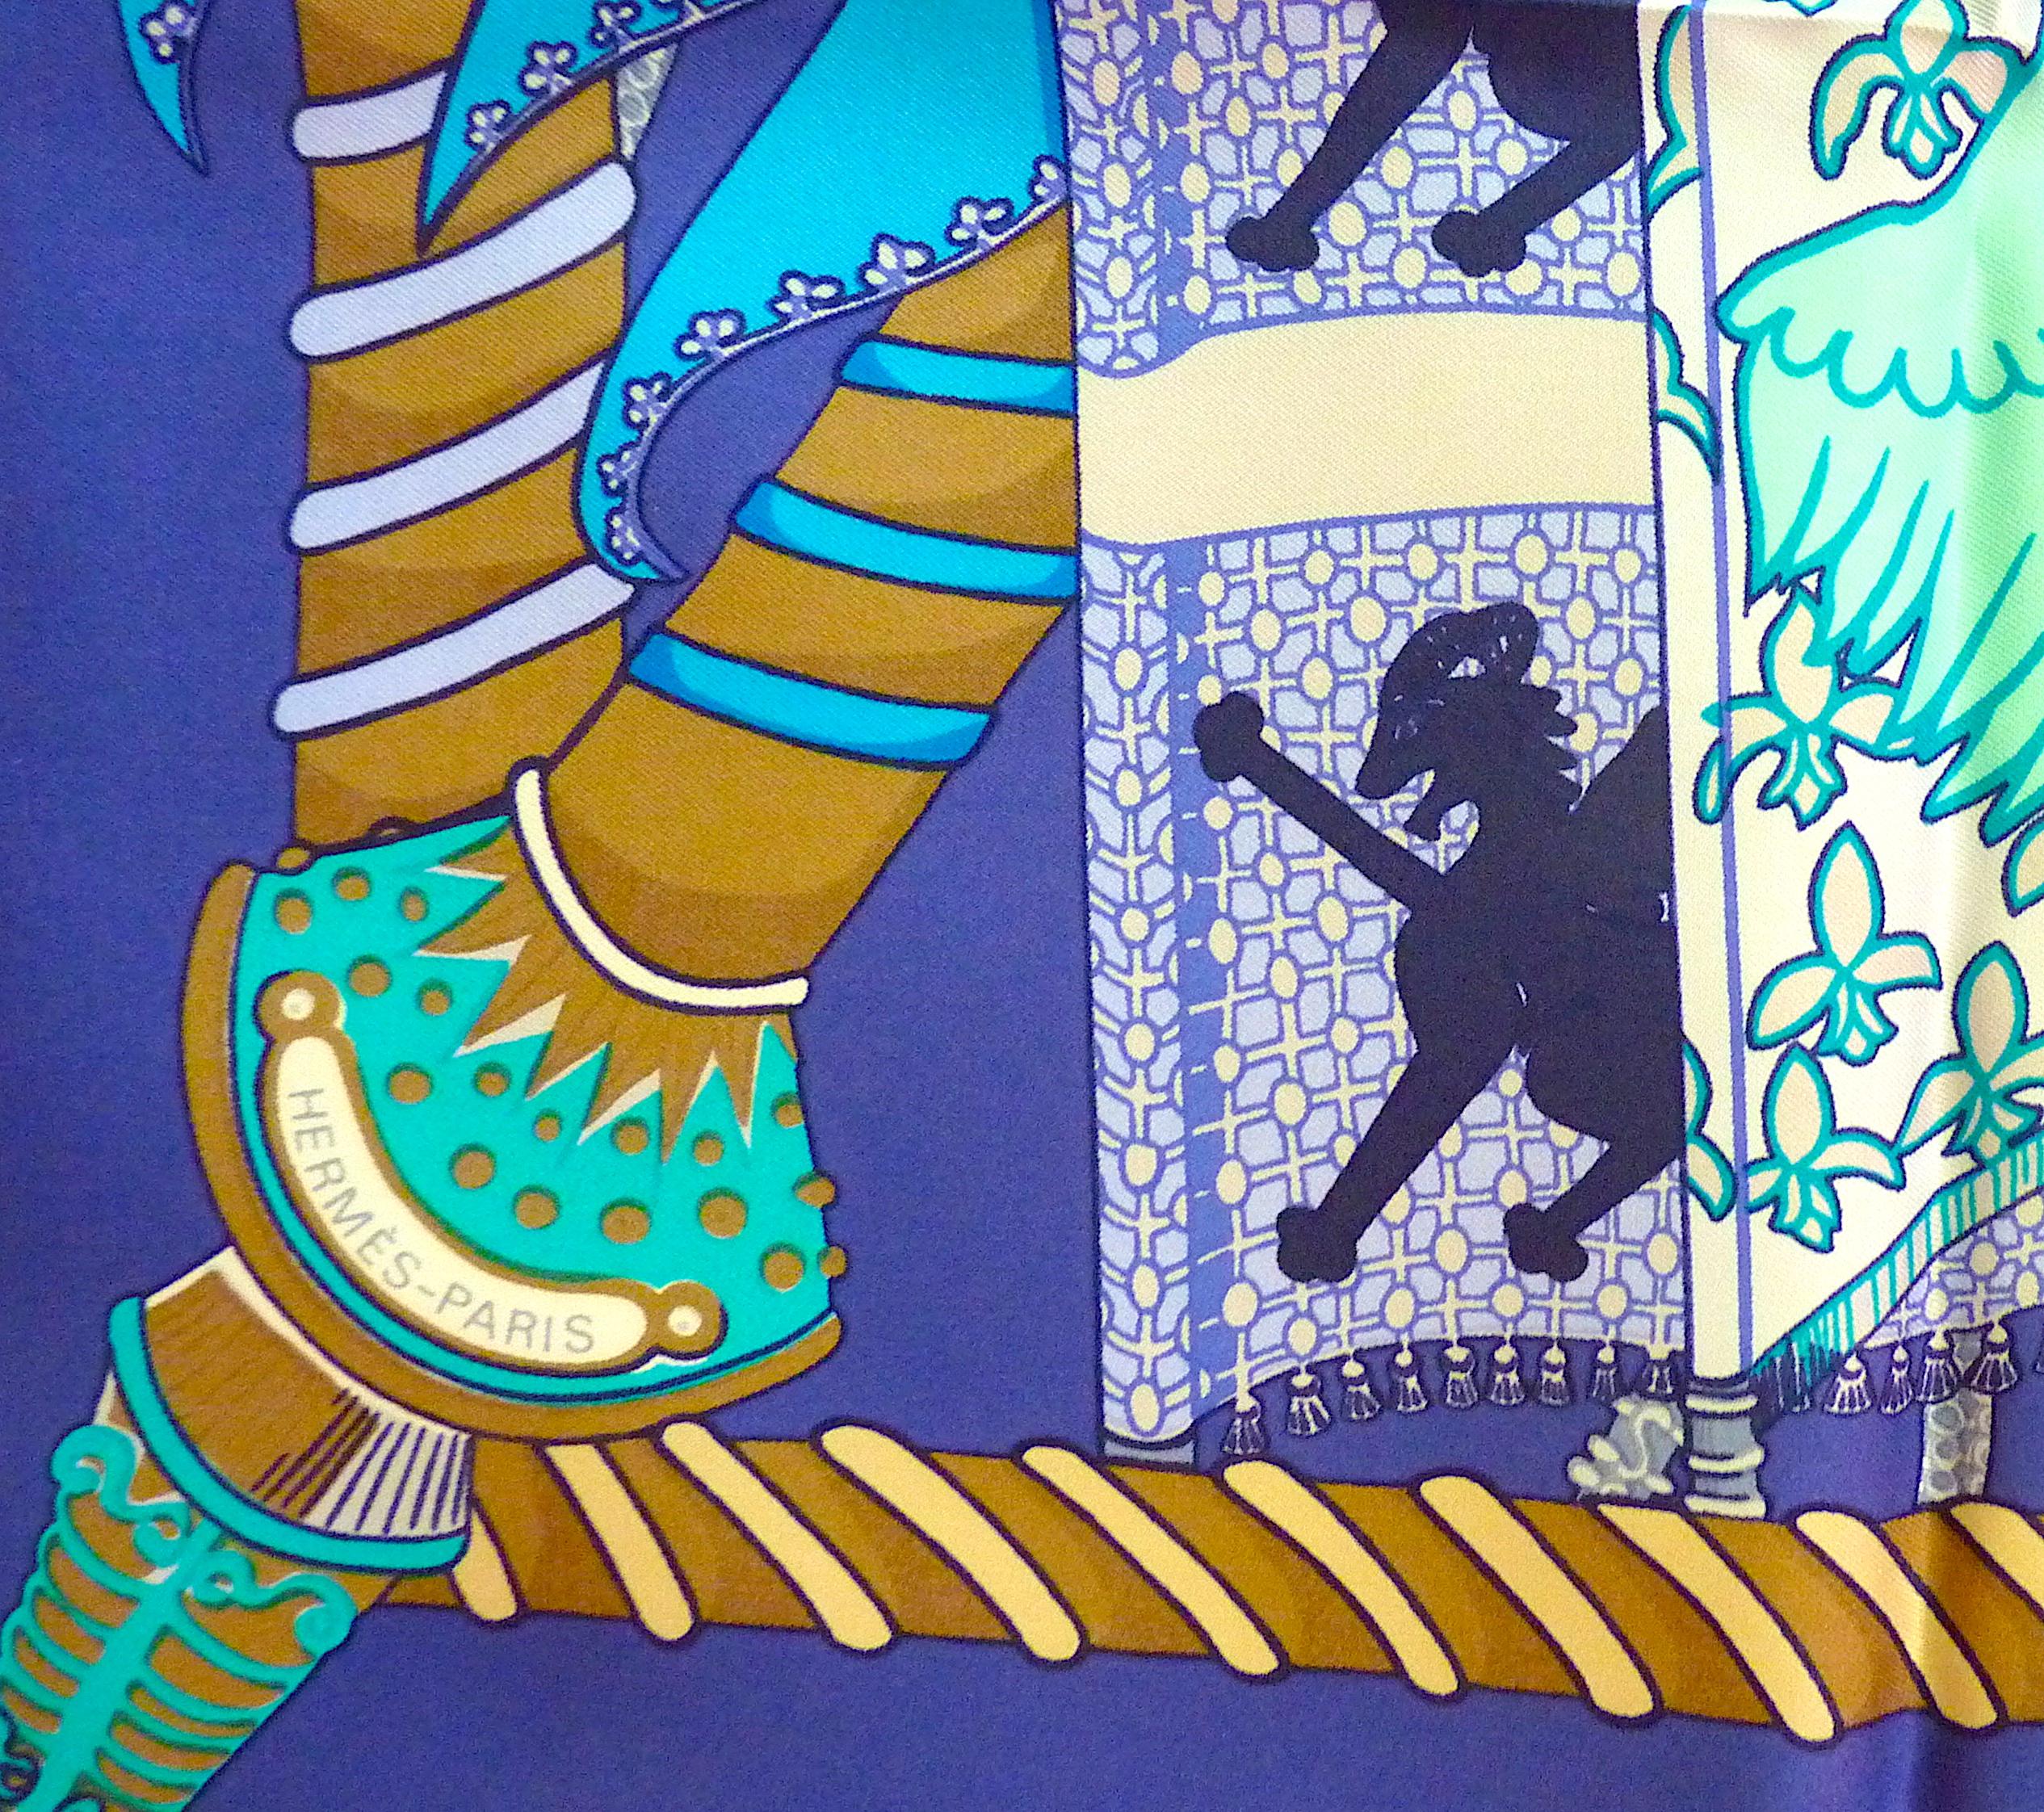 Echarpe HERMES en soie bleue Etendards et Bannières par Annie Faivre,  Jamais porté, première édition en 1984

Nuances de bleu exquises : fond bleu profond, bleu turquoise doux et bleu ciel à motif bleu bébé

ÉTAT : État impeccable ! Jamais porté